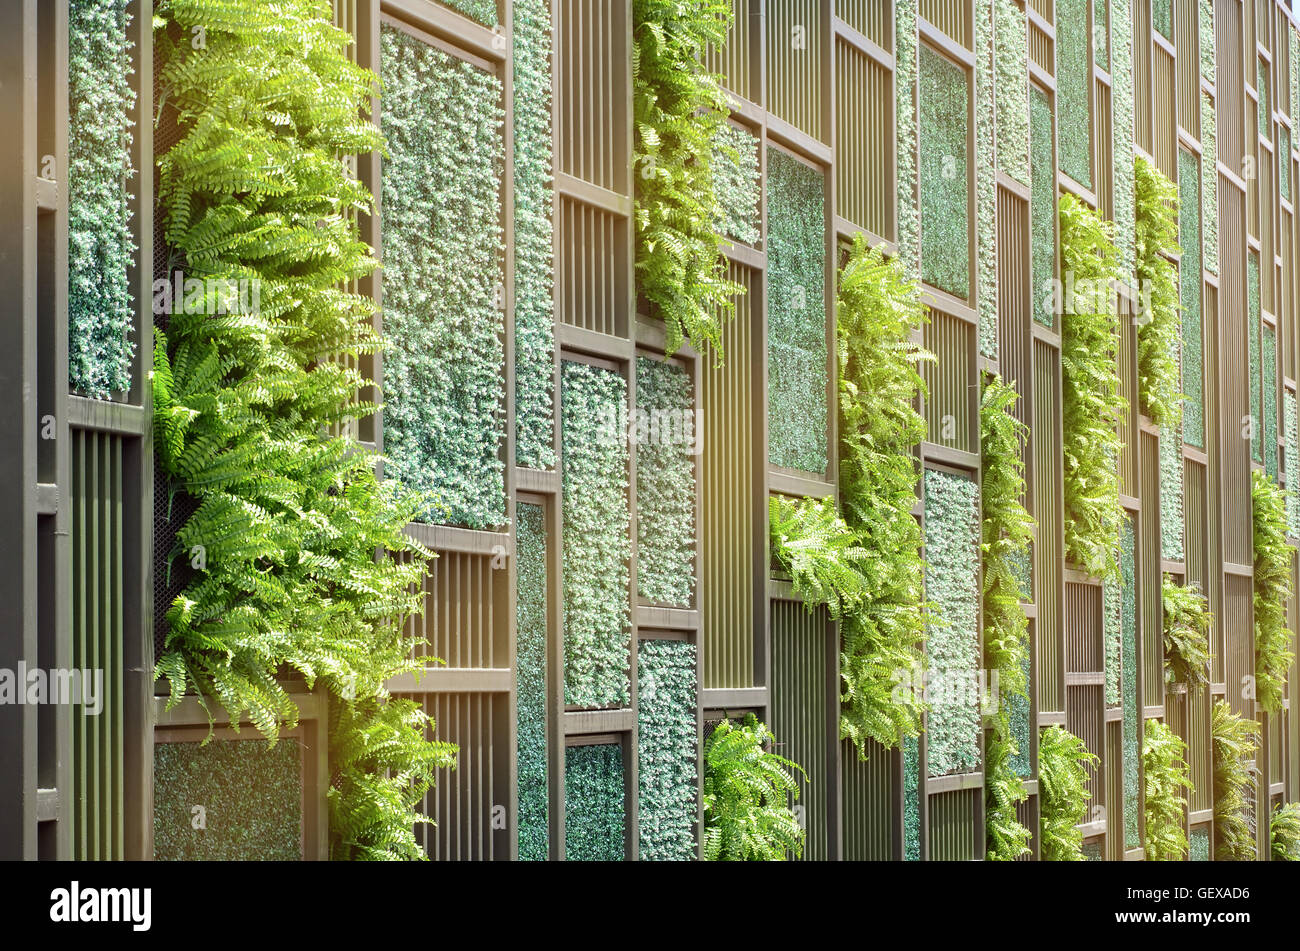 Grüne Wand mit vertikalen Demo Gardenning in warmen, hellen Ton. Stockfoto